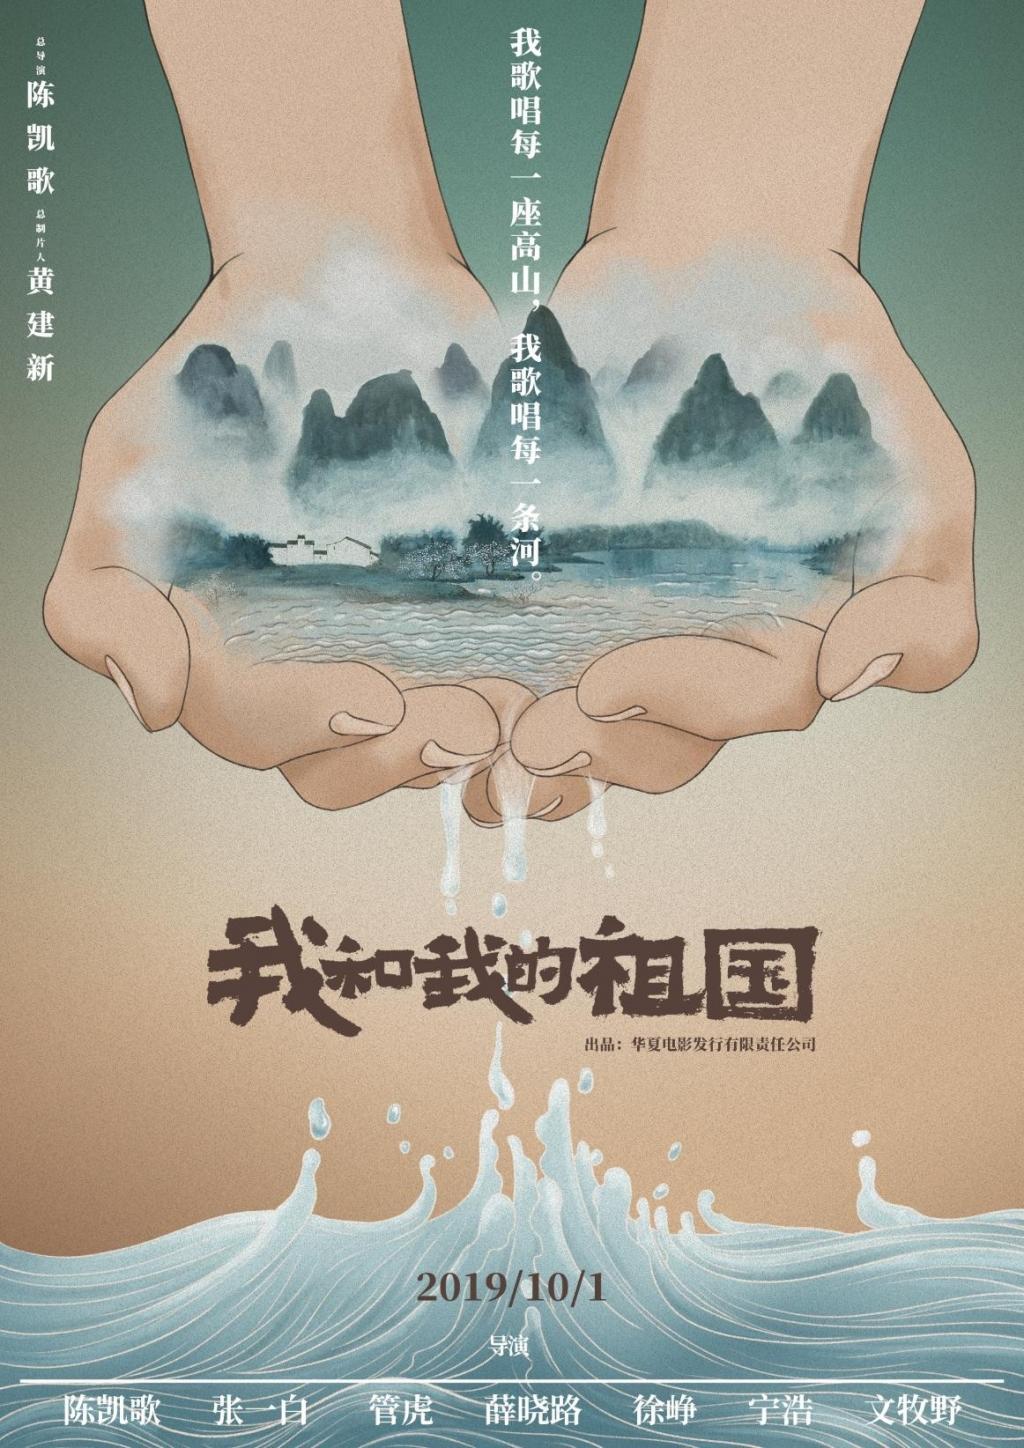 2019年70周年国庆档《我和我的祖国》宣传定档海报